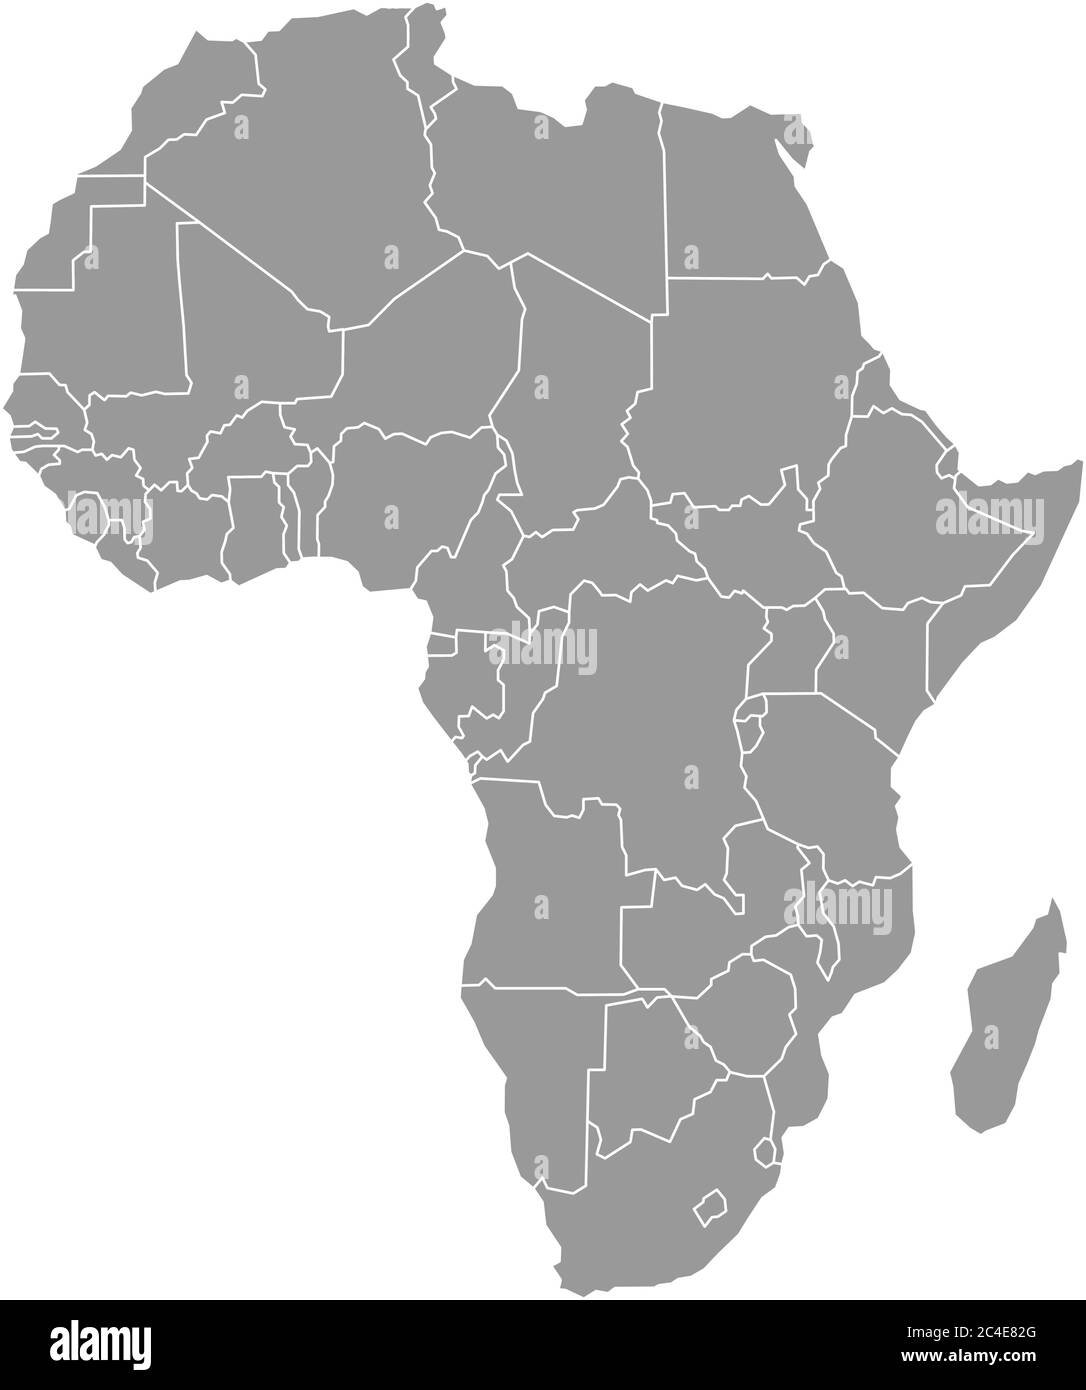 Carte simple et plate grise du continent africain avec frontières nationales isolées sur fond blanc. Illustration vectorielle. Illustration de Vecteur